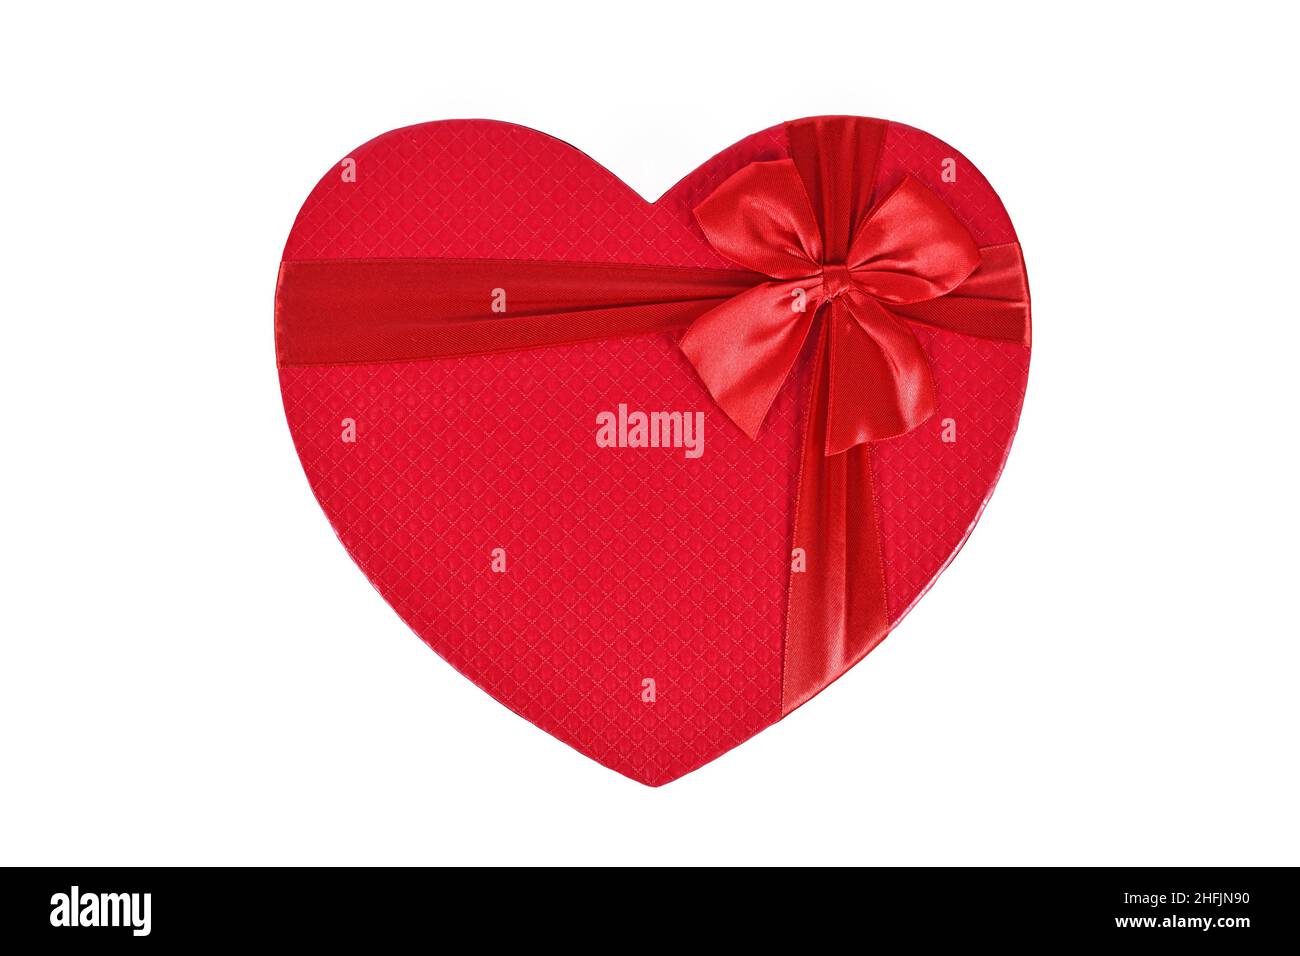 Vue de dessus de la boîte cadeau de Saint-Valentin en forme de coeur rouge sur fond blanc Banque D'Images